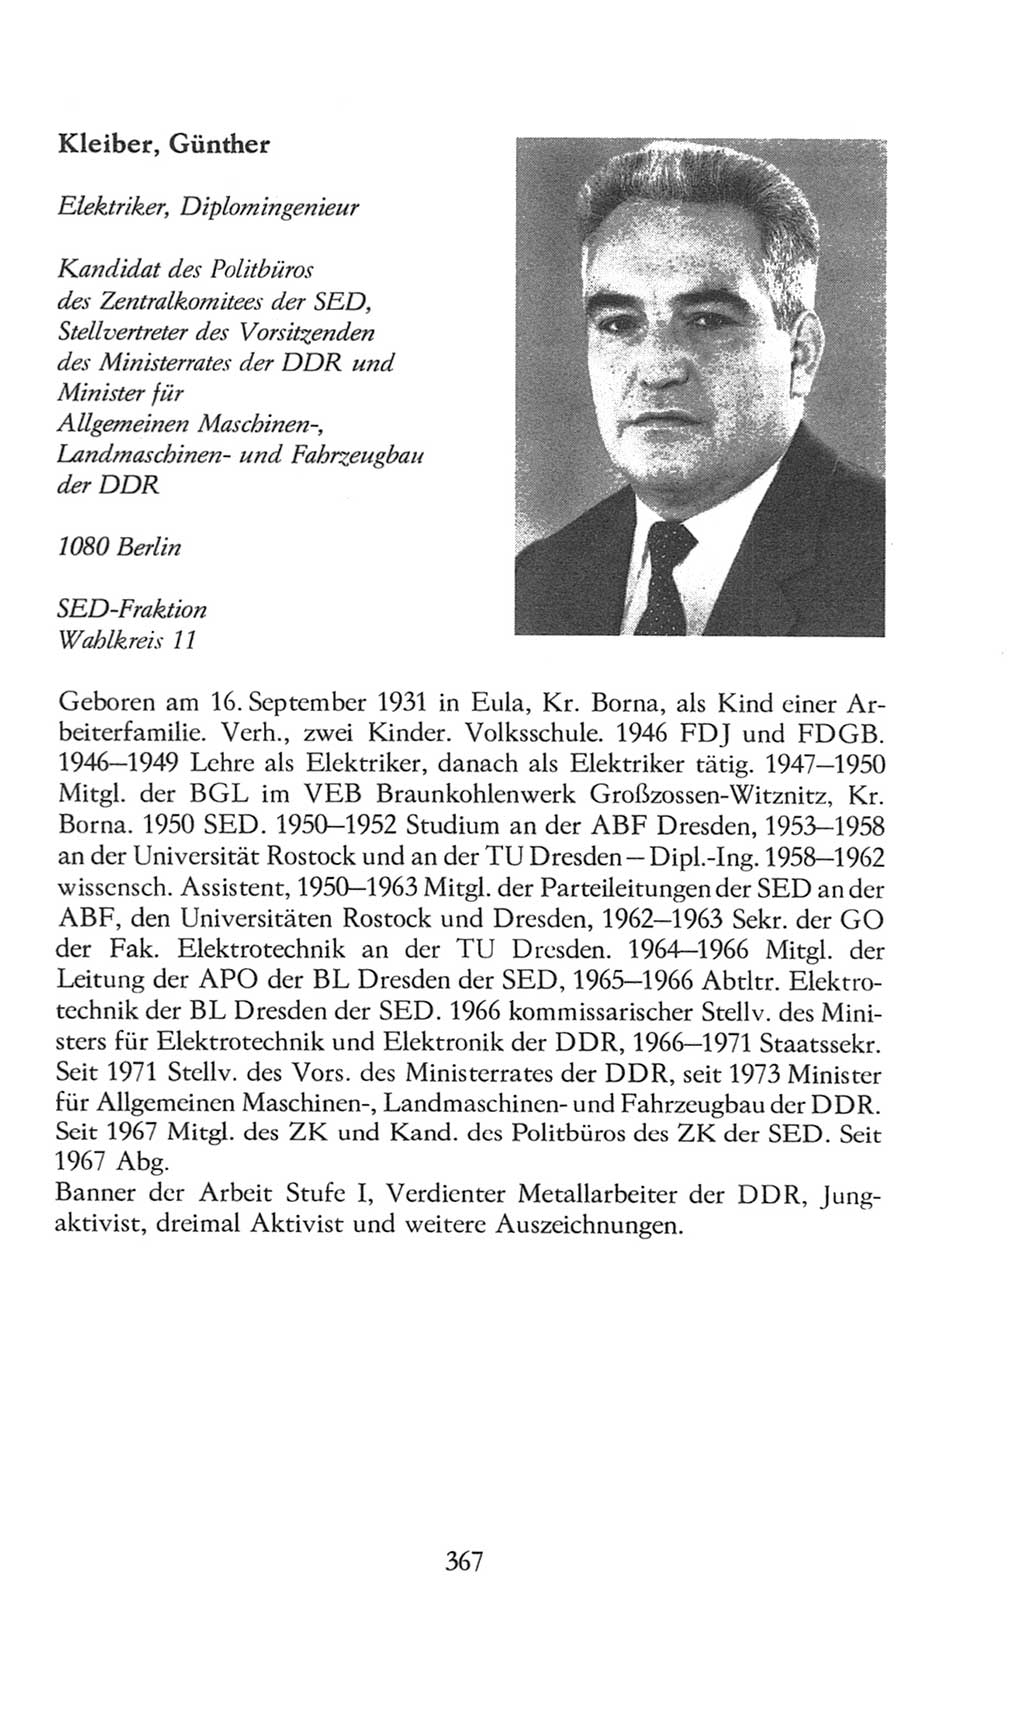 Volkskammer (VK) der Deutschen Demokratischen Republik (DDR), 8. Wahlperiode 1981-1986, Seite 367 (VK. DDR 8. WP. 1981-1986, S. 367)